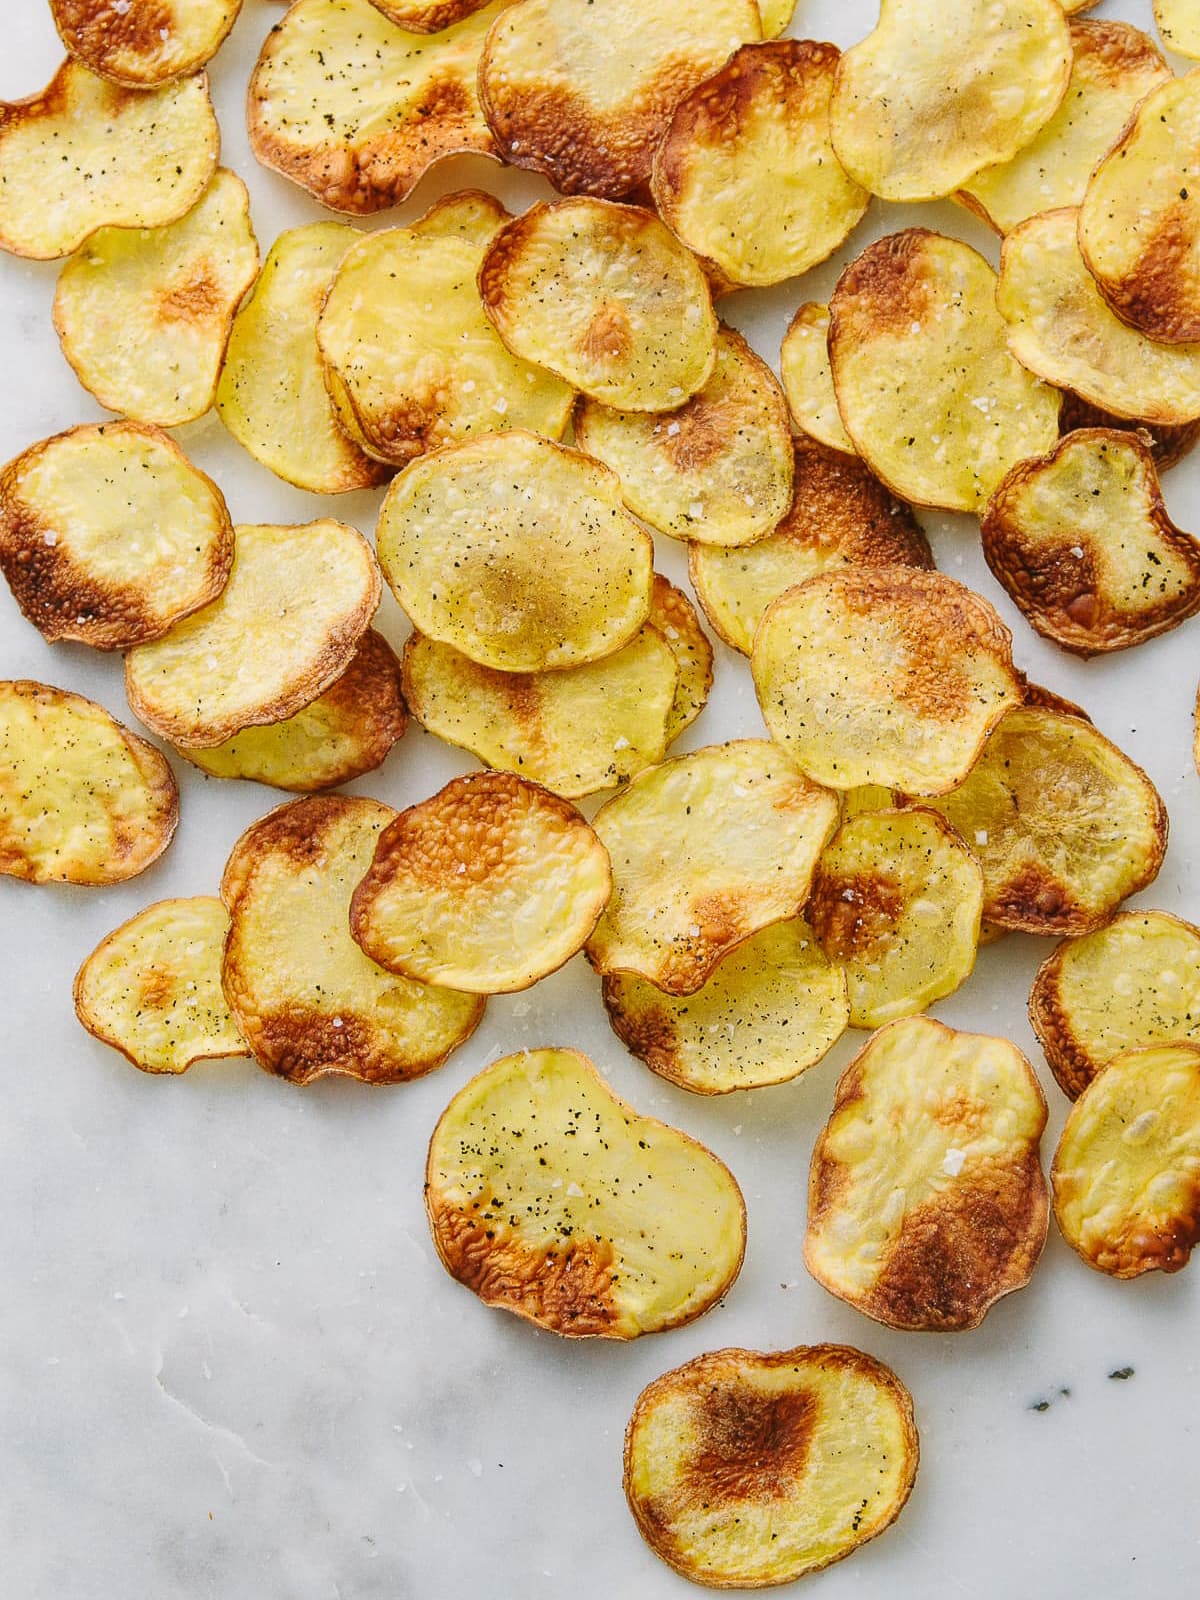 Homemade Baked Potato Chips (Rustic + Crispy)